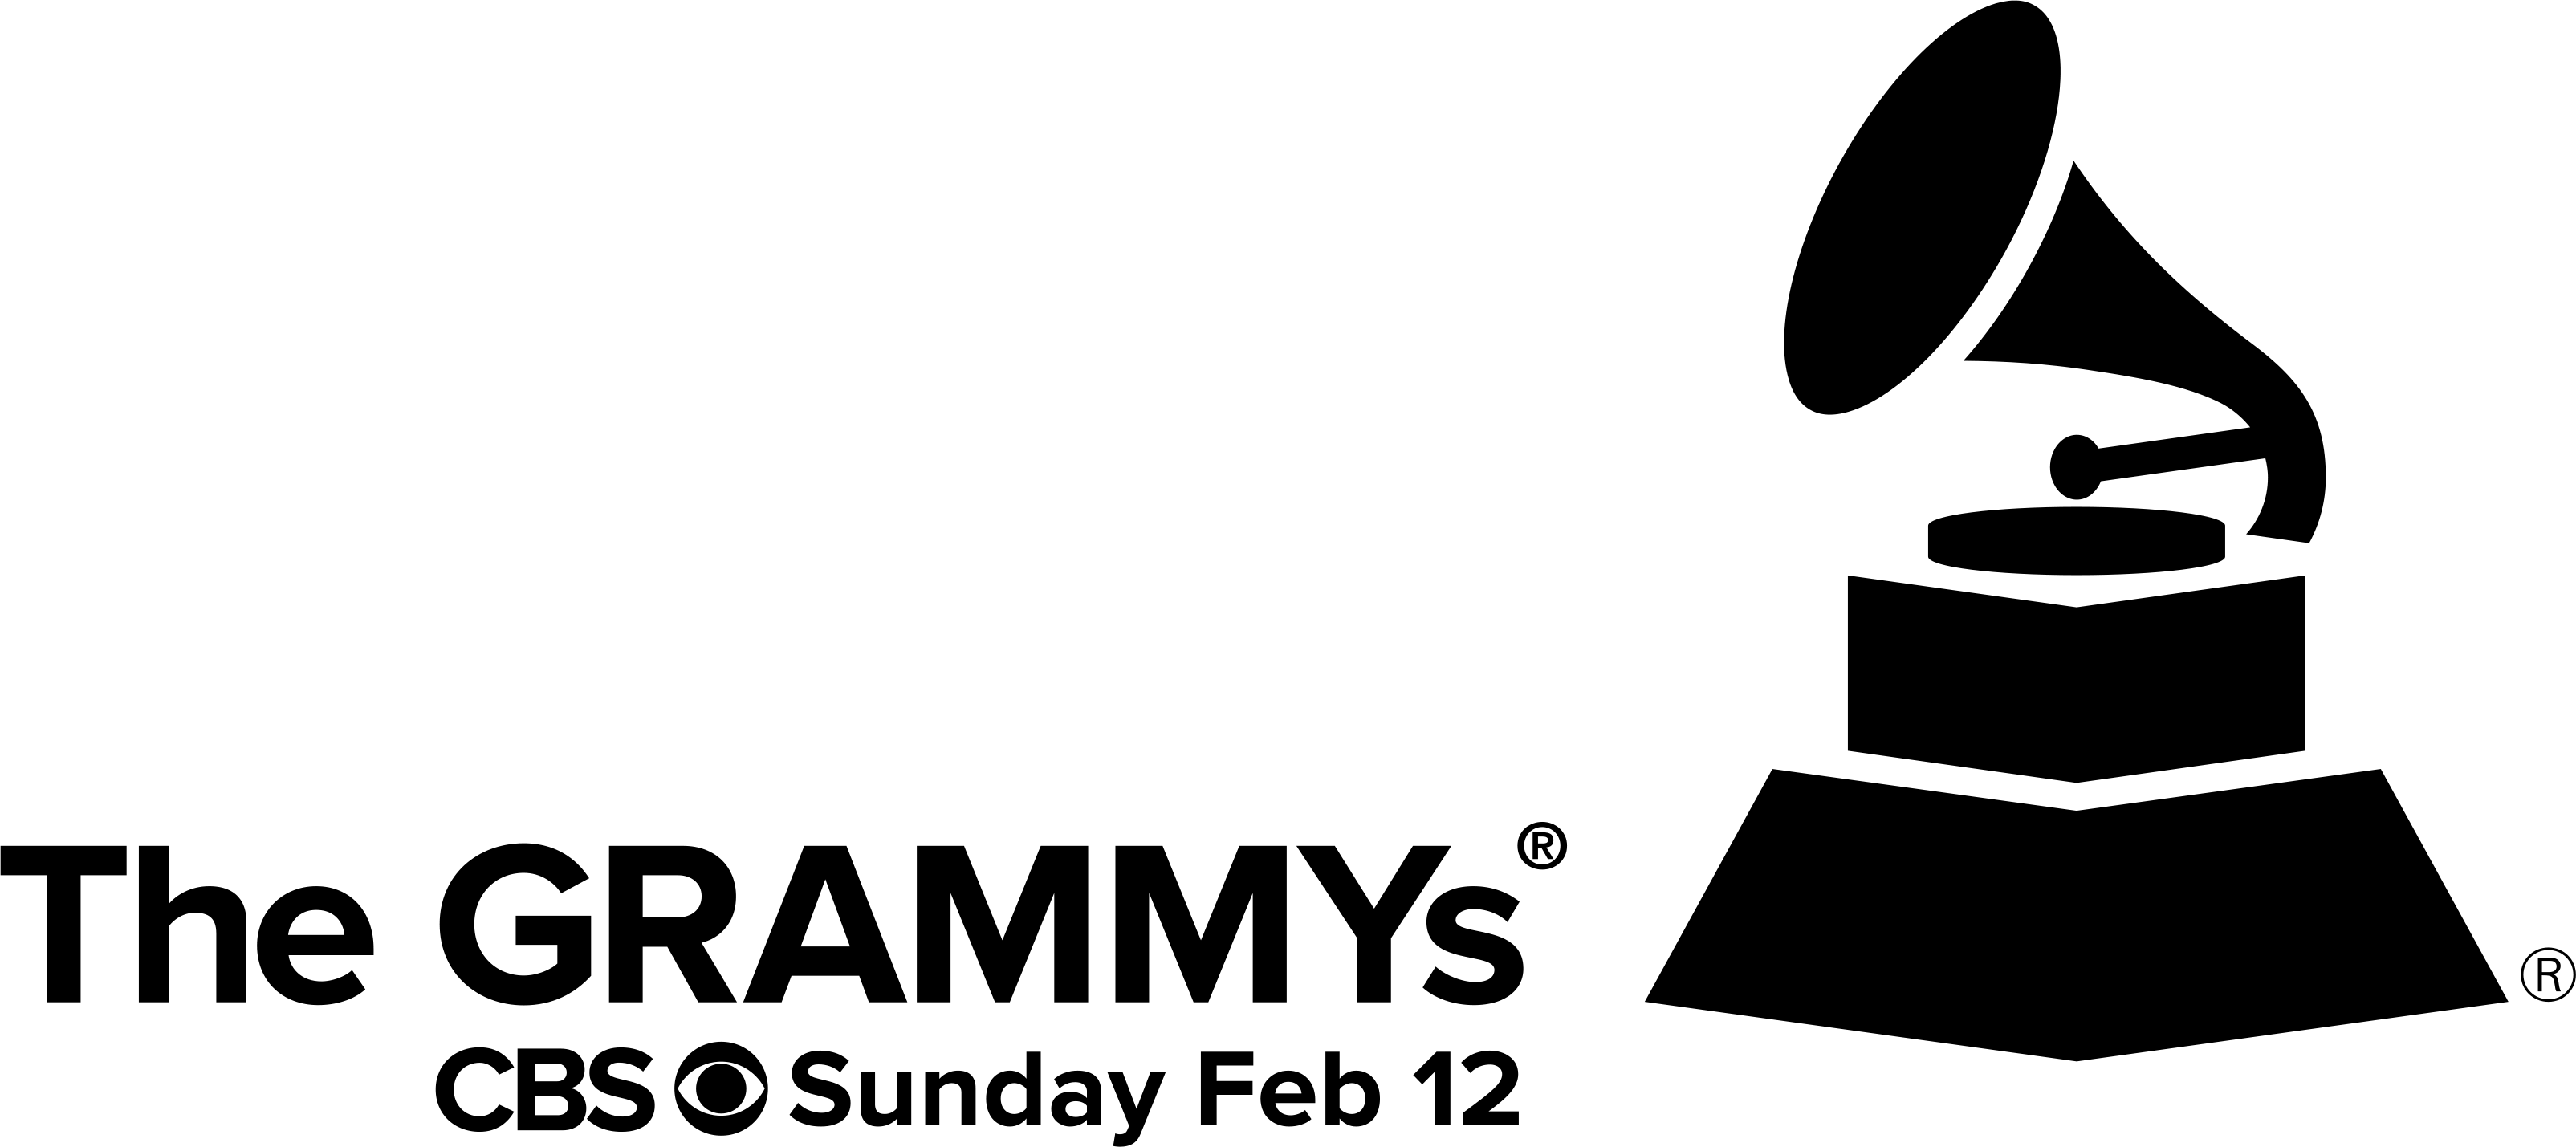 Grammy Logo - grammy-logo - The Journal of Gospel Music